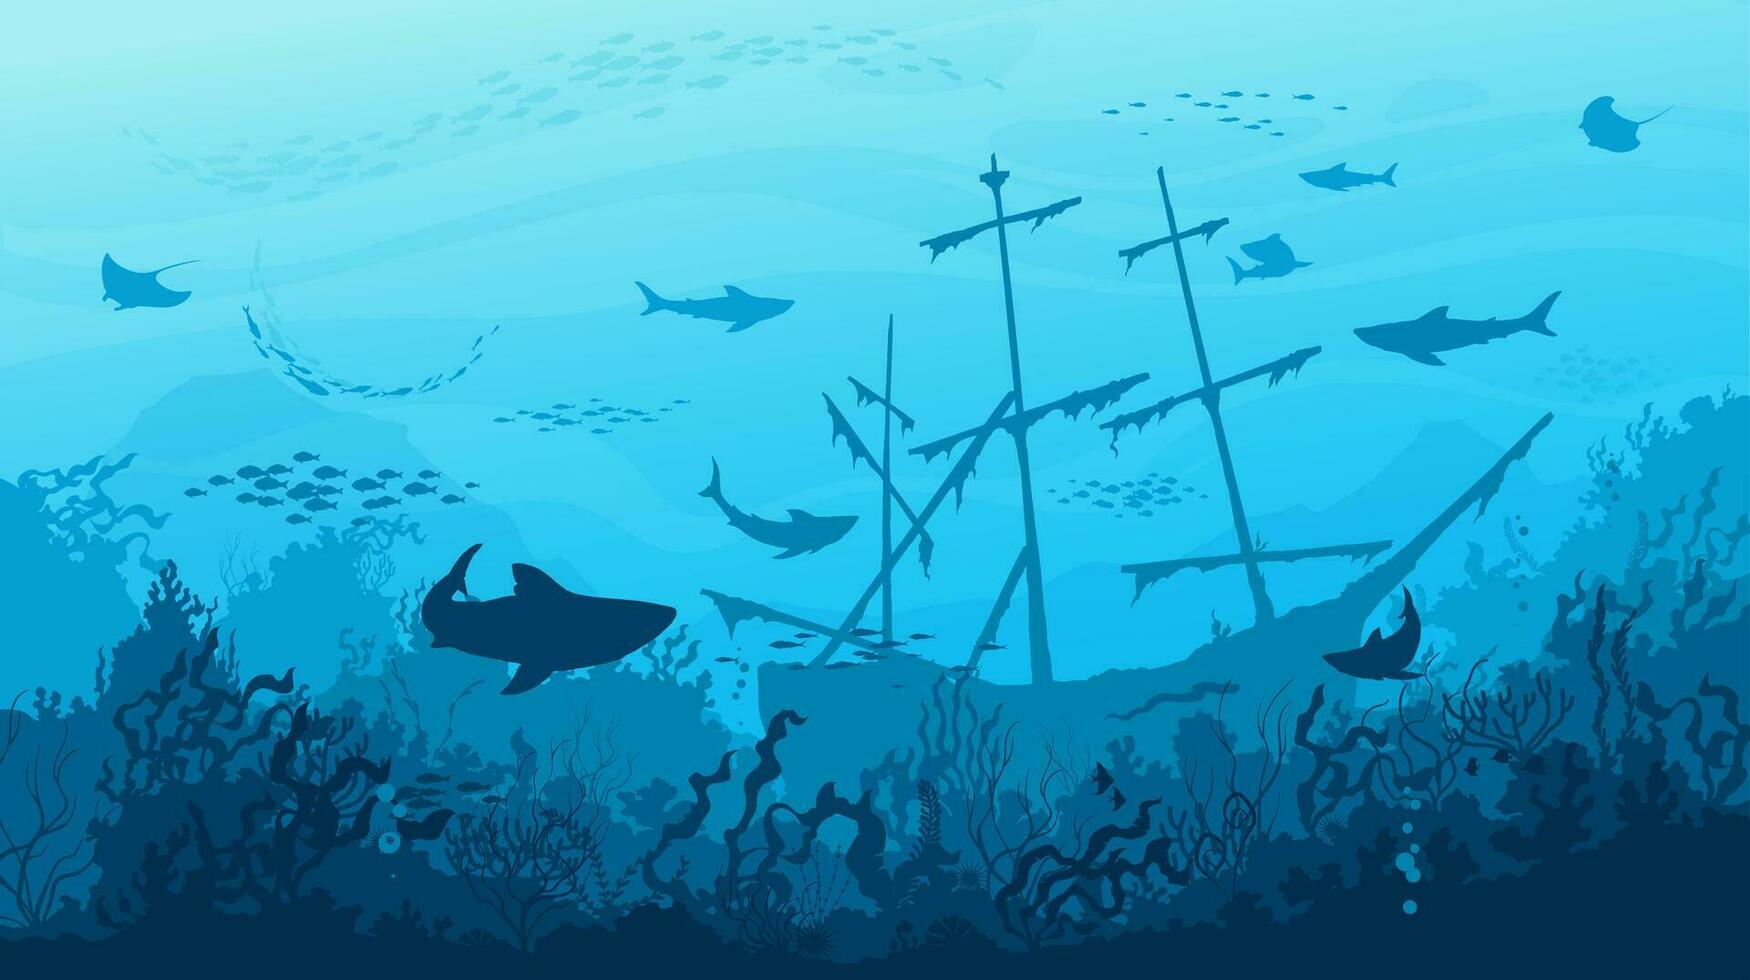 hav hajar, nedsänkt fartyg och fiskar i under vattnet vektor